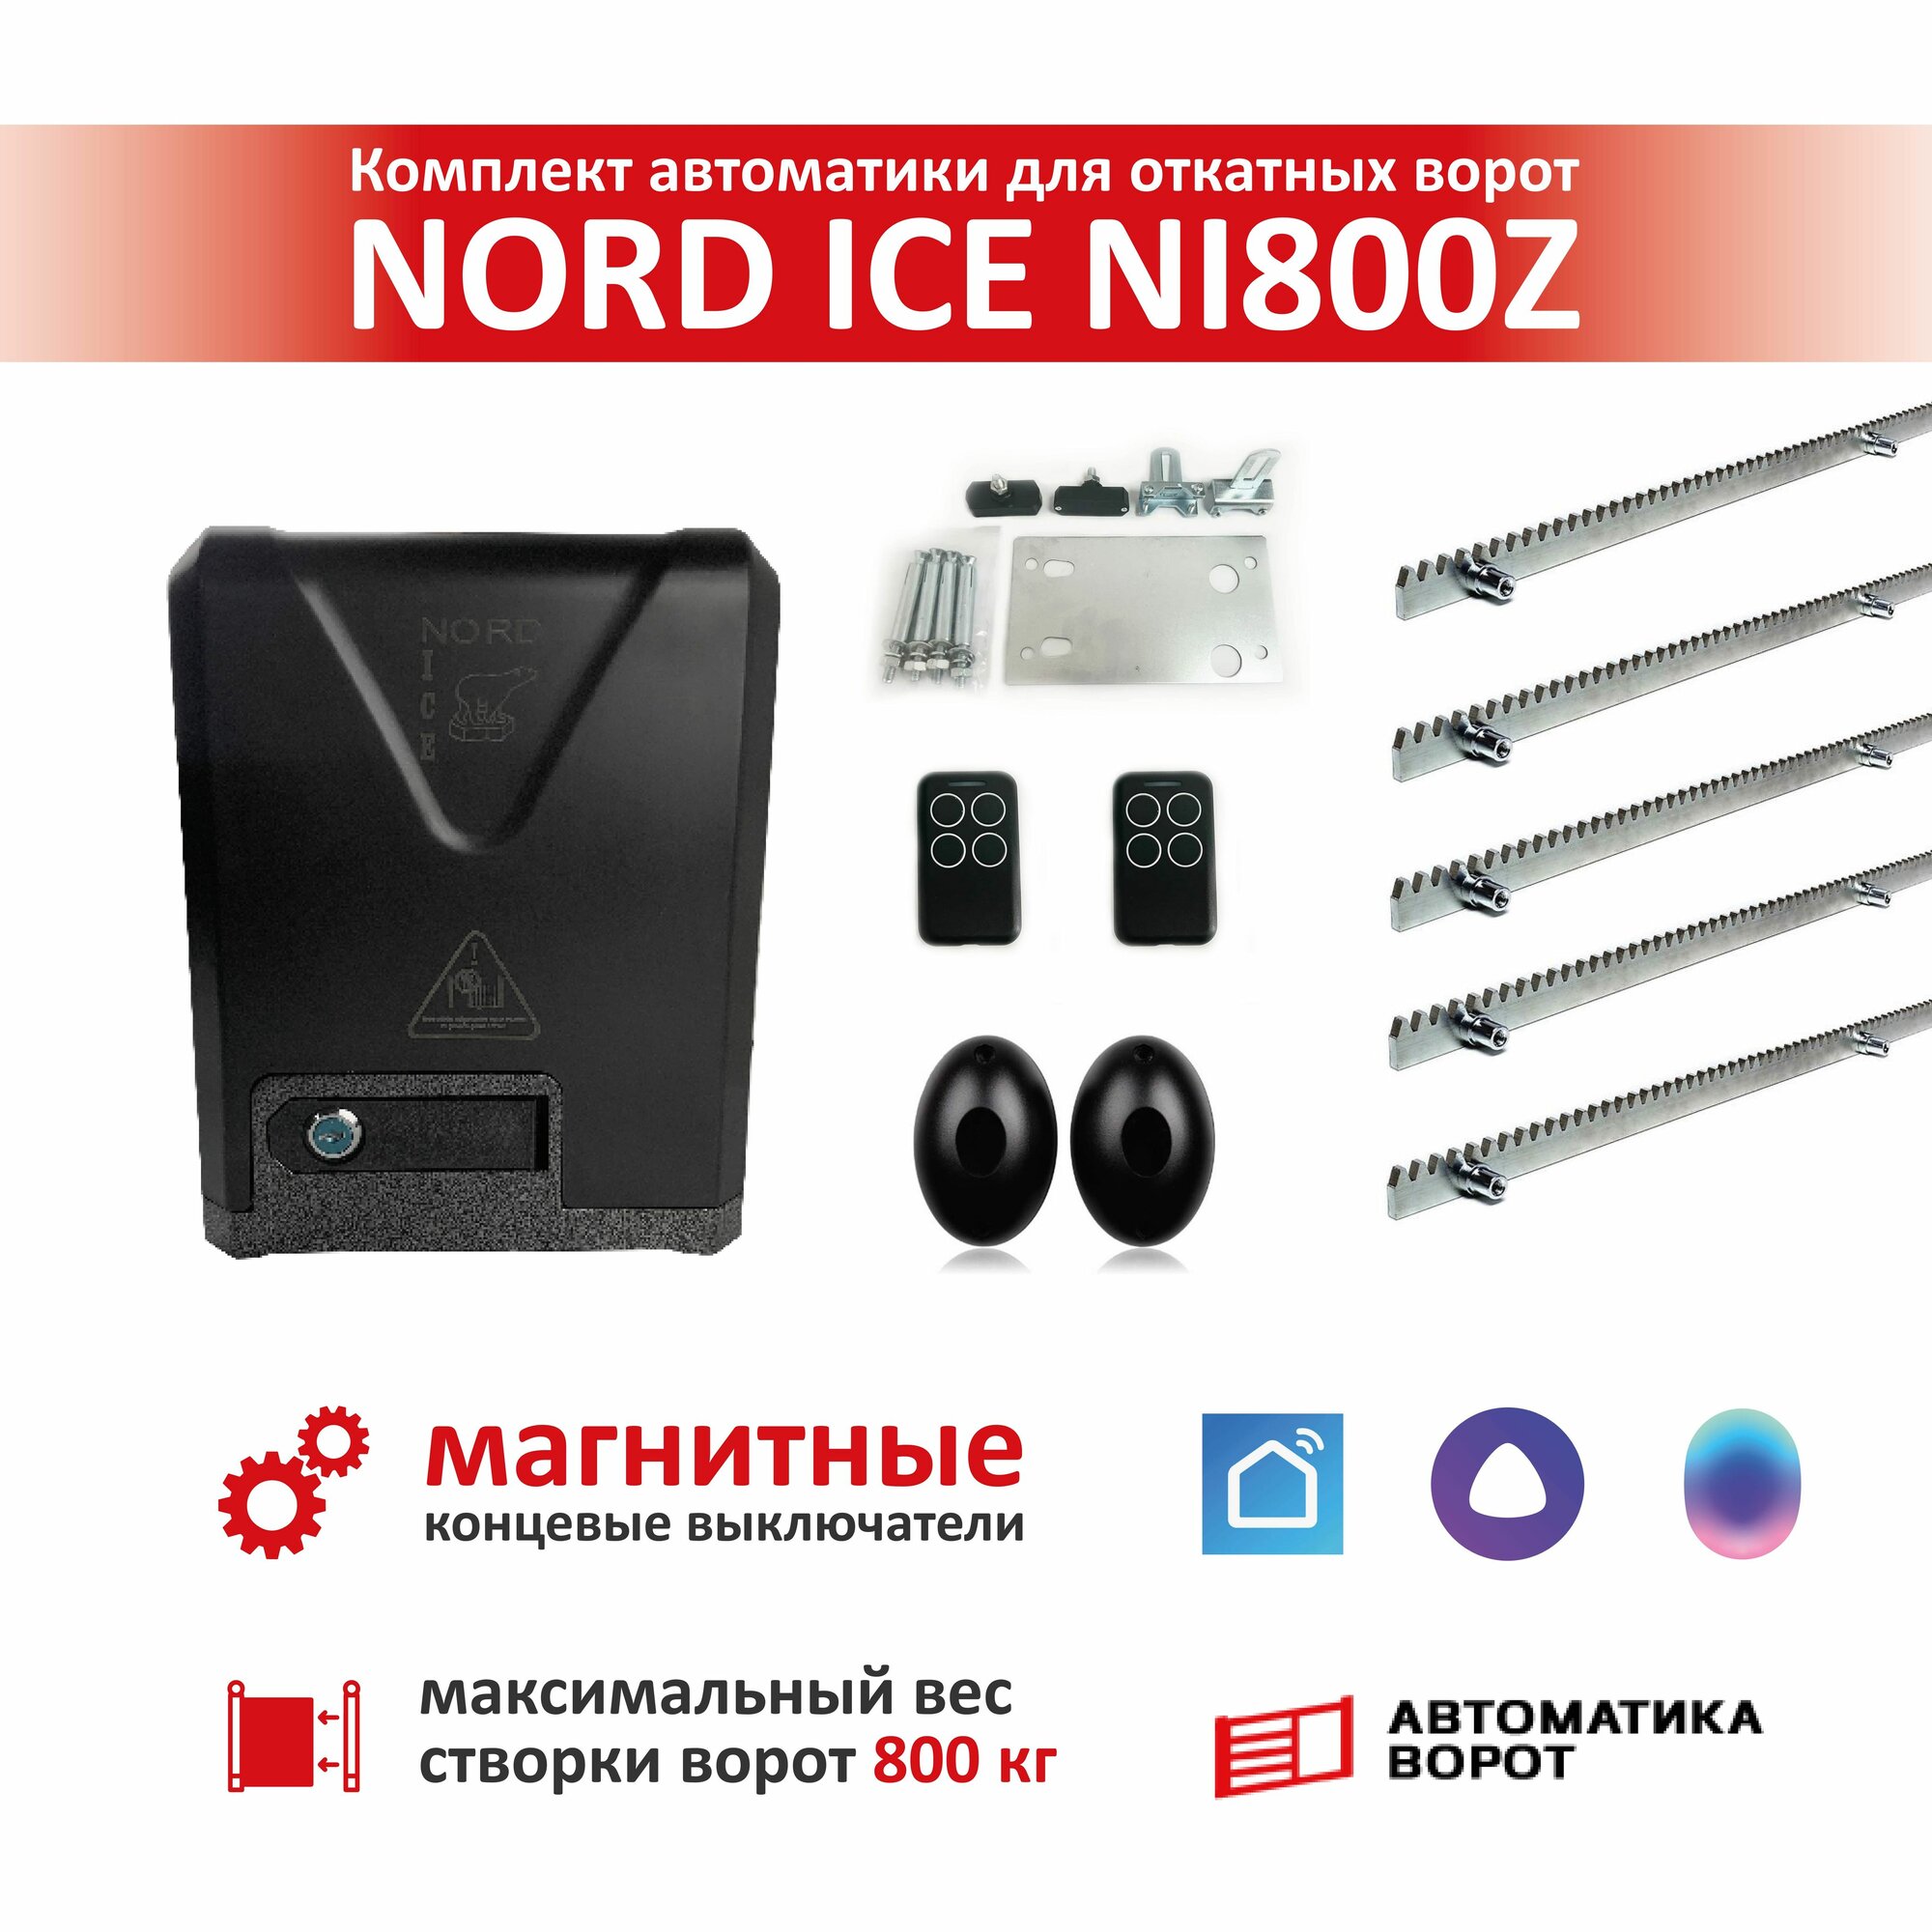 Комплект привода для откатных ворот NORD ICE NI800Z + зубчатая рейка (5 шт), фотоэлементы YS-119 (магнитные концевые выключатели) / Максимальный вес ворот: 800кг